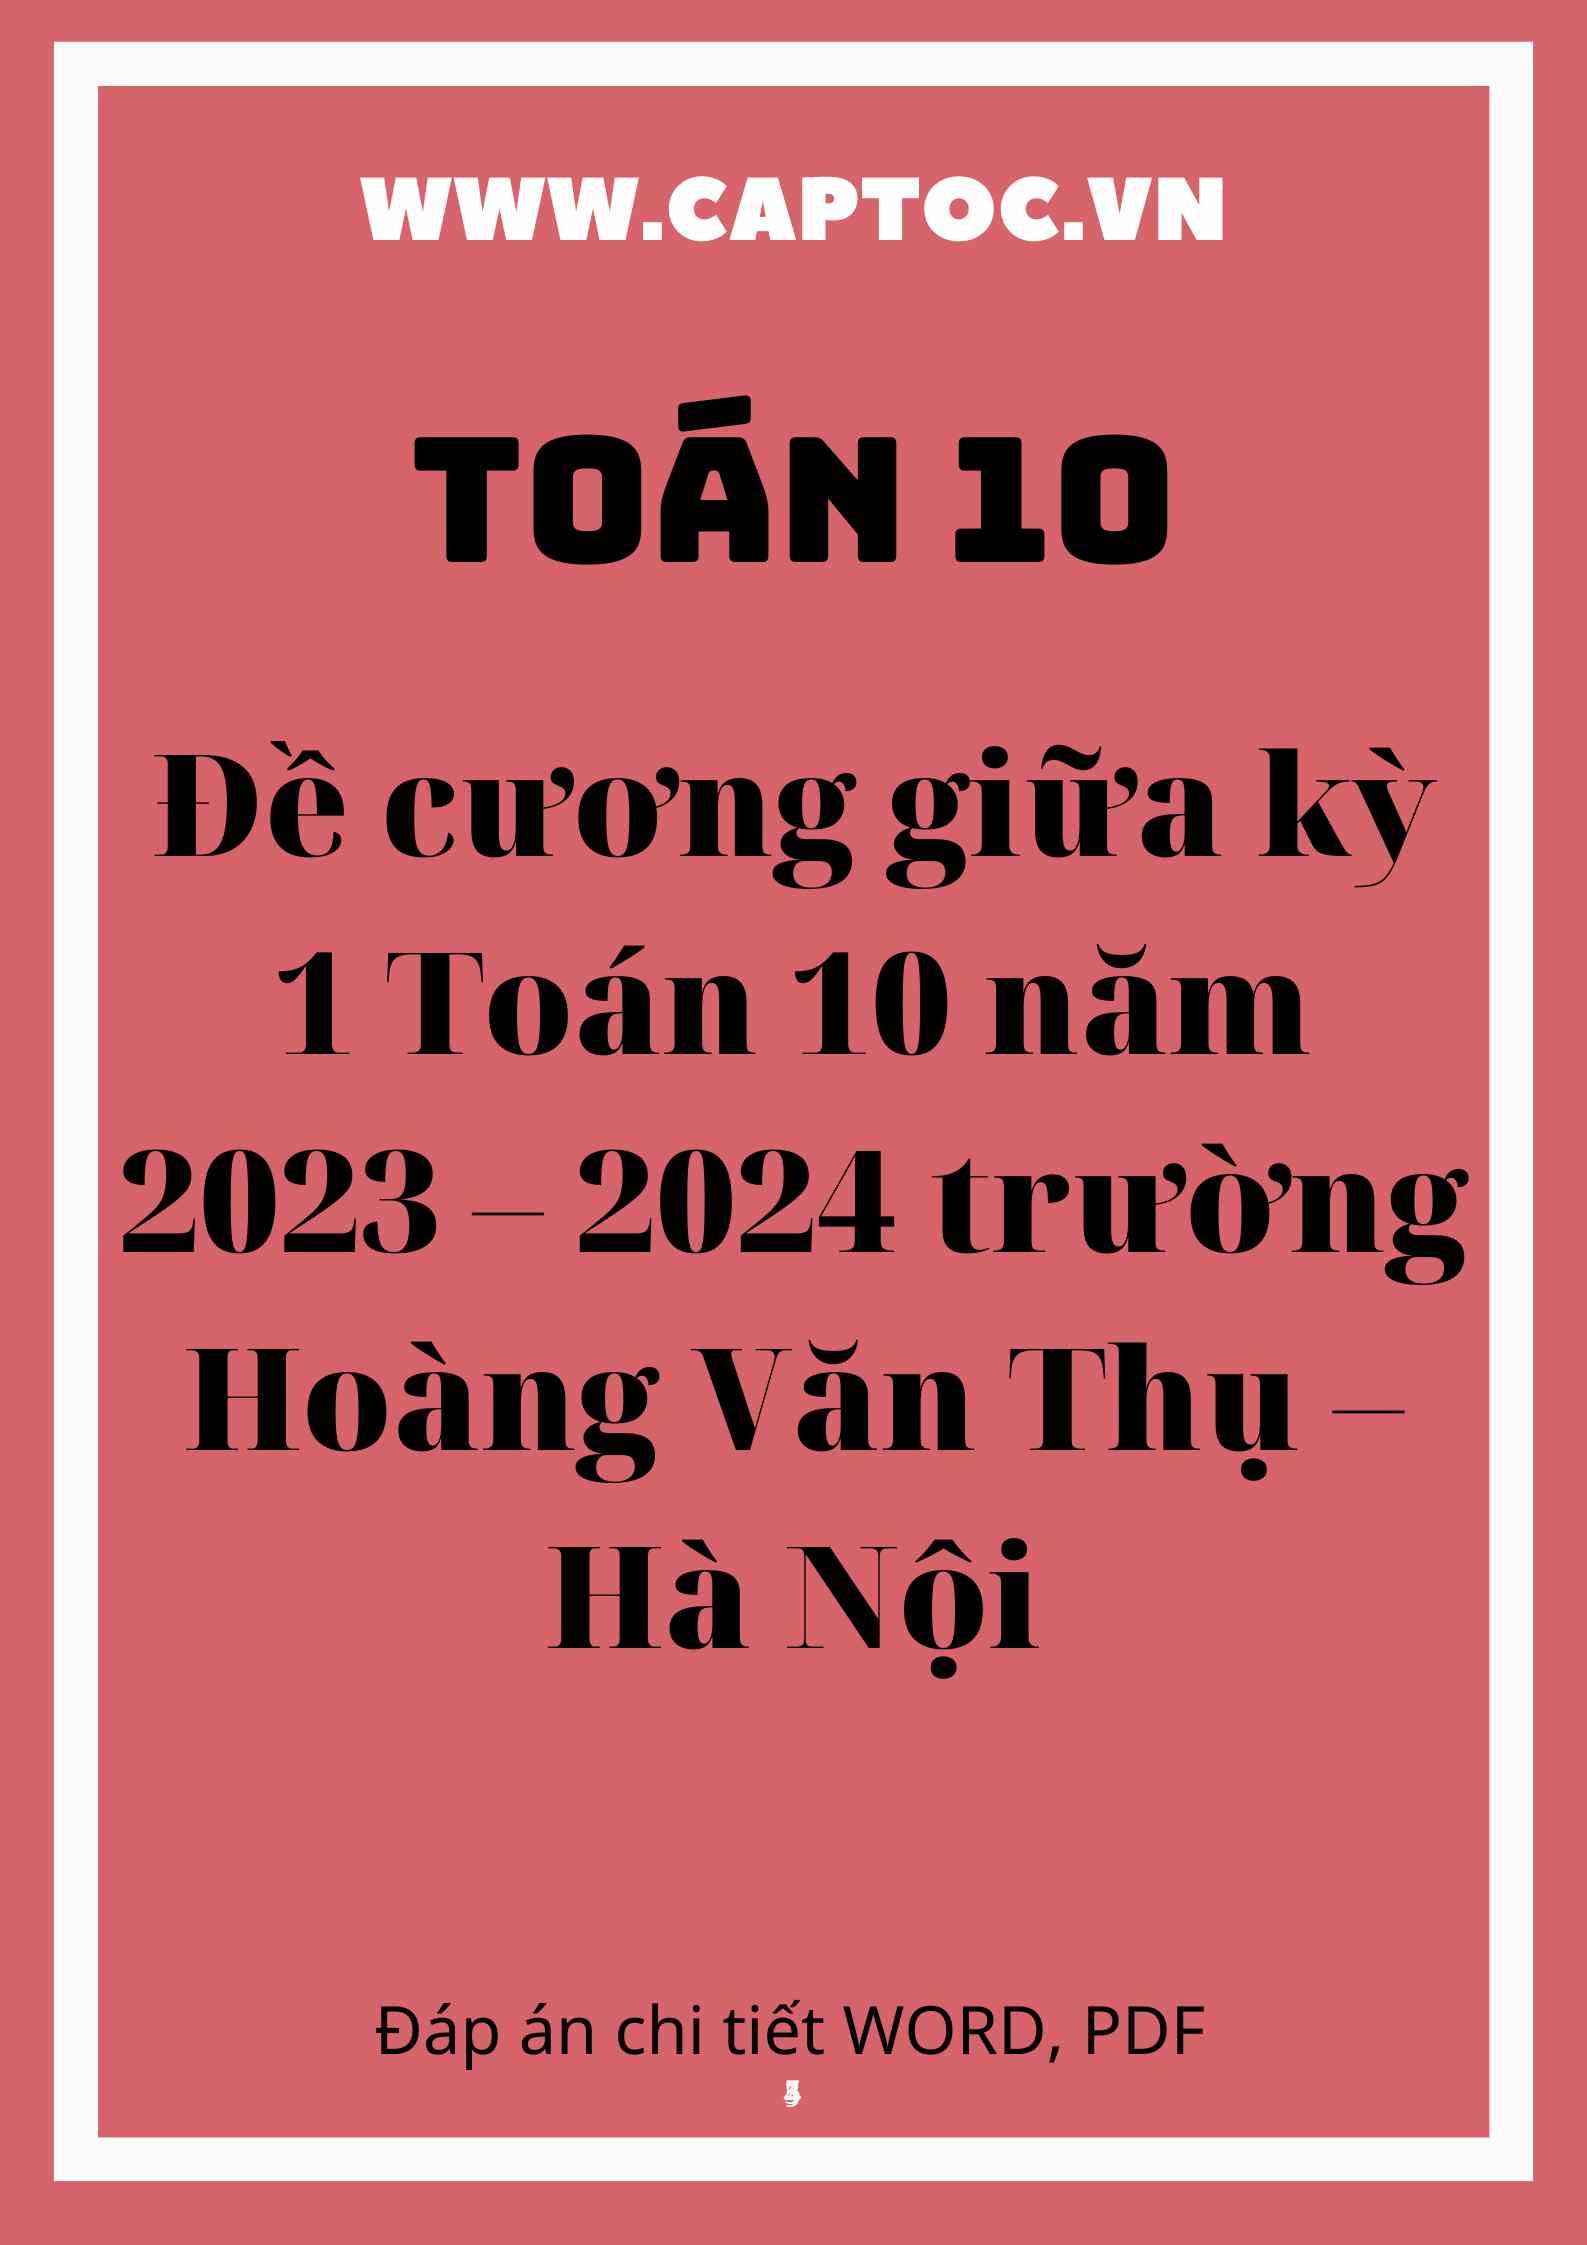 Đề cương giữa kỳ 1 Toán 10 năm 2023 – 2024 trường Hoàng Văn Thụ – Hà Nội